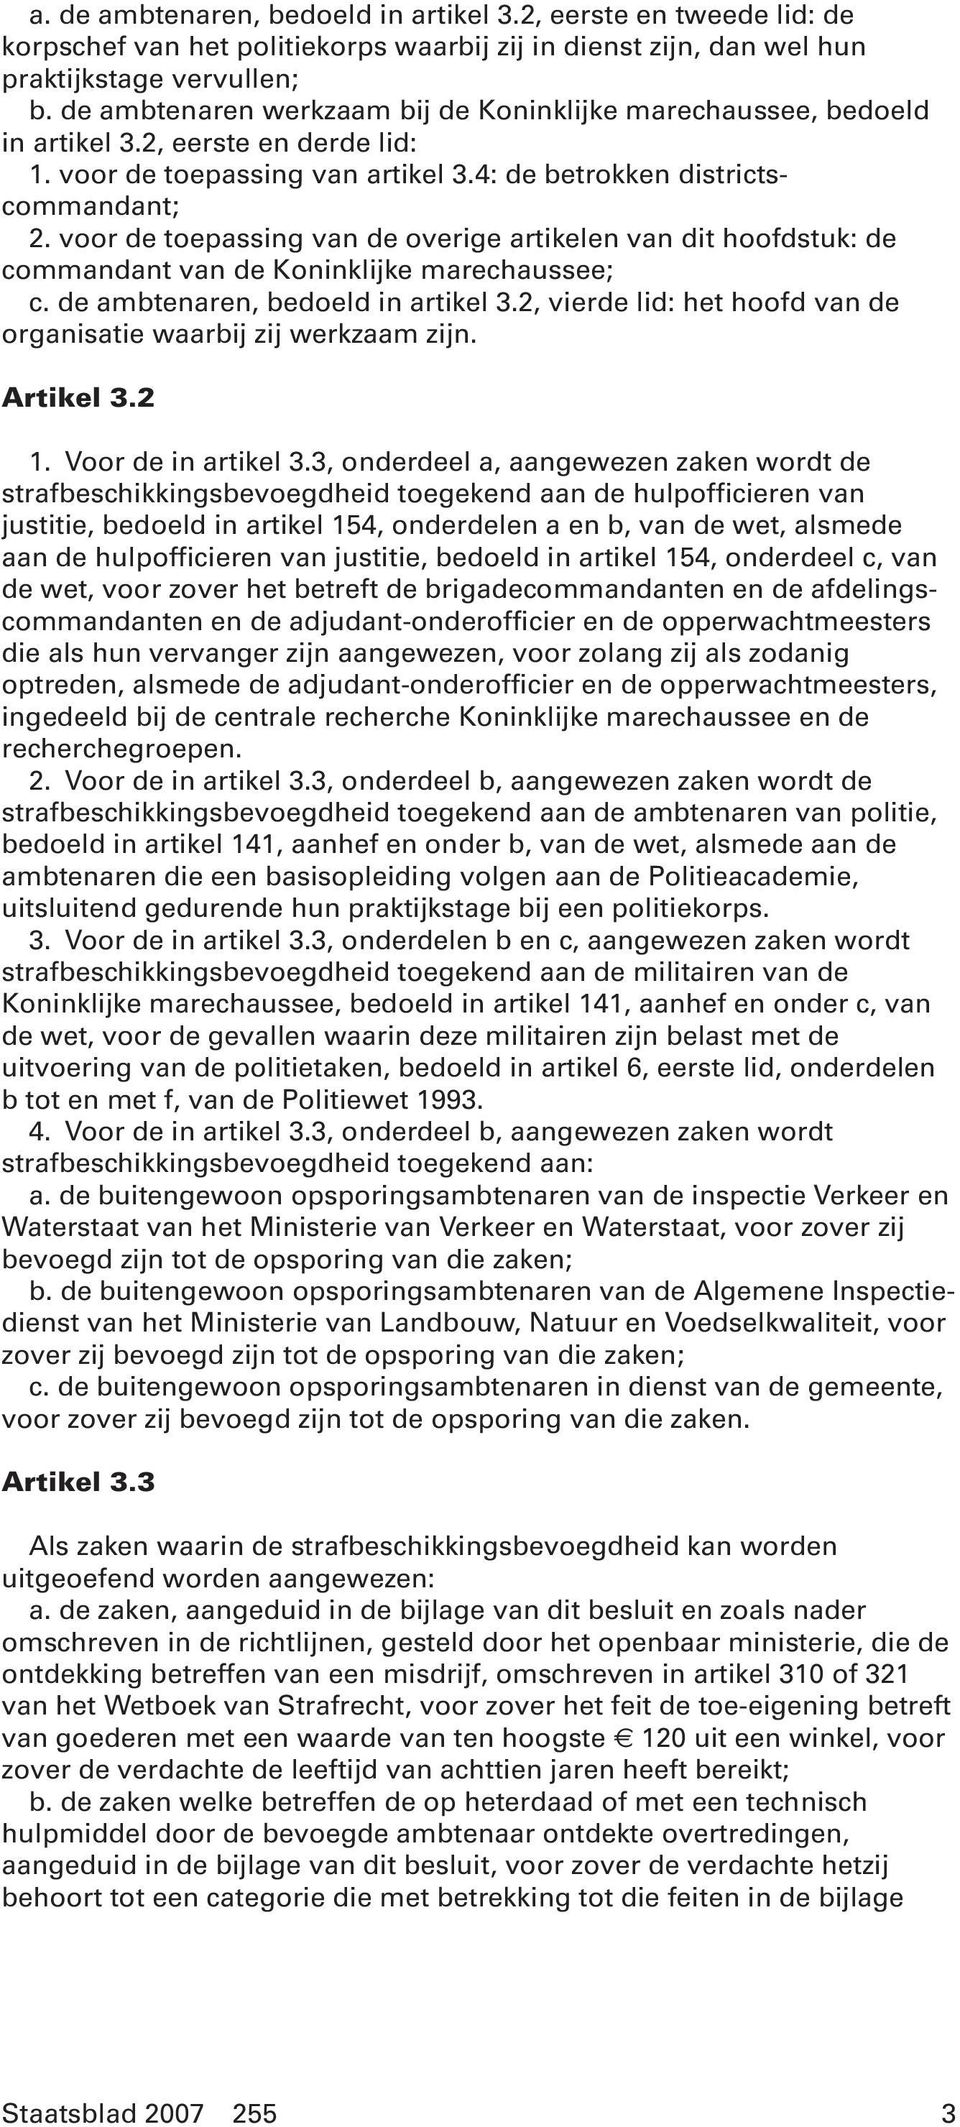 voor de toepassing van de overige artikelen van dit hoofdstuk: de commandant van de Koninklijke marechaussee; c. de ambtenaren, bedoeld in artikel 3.